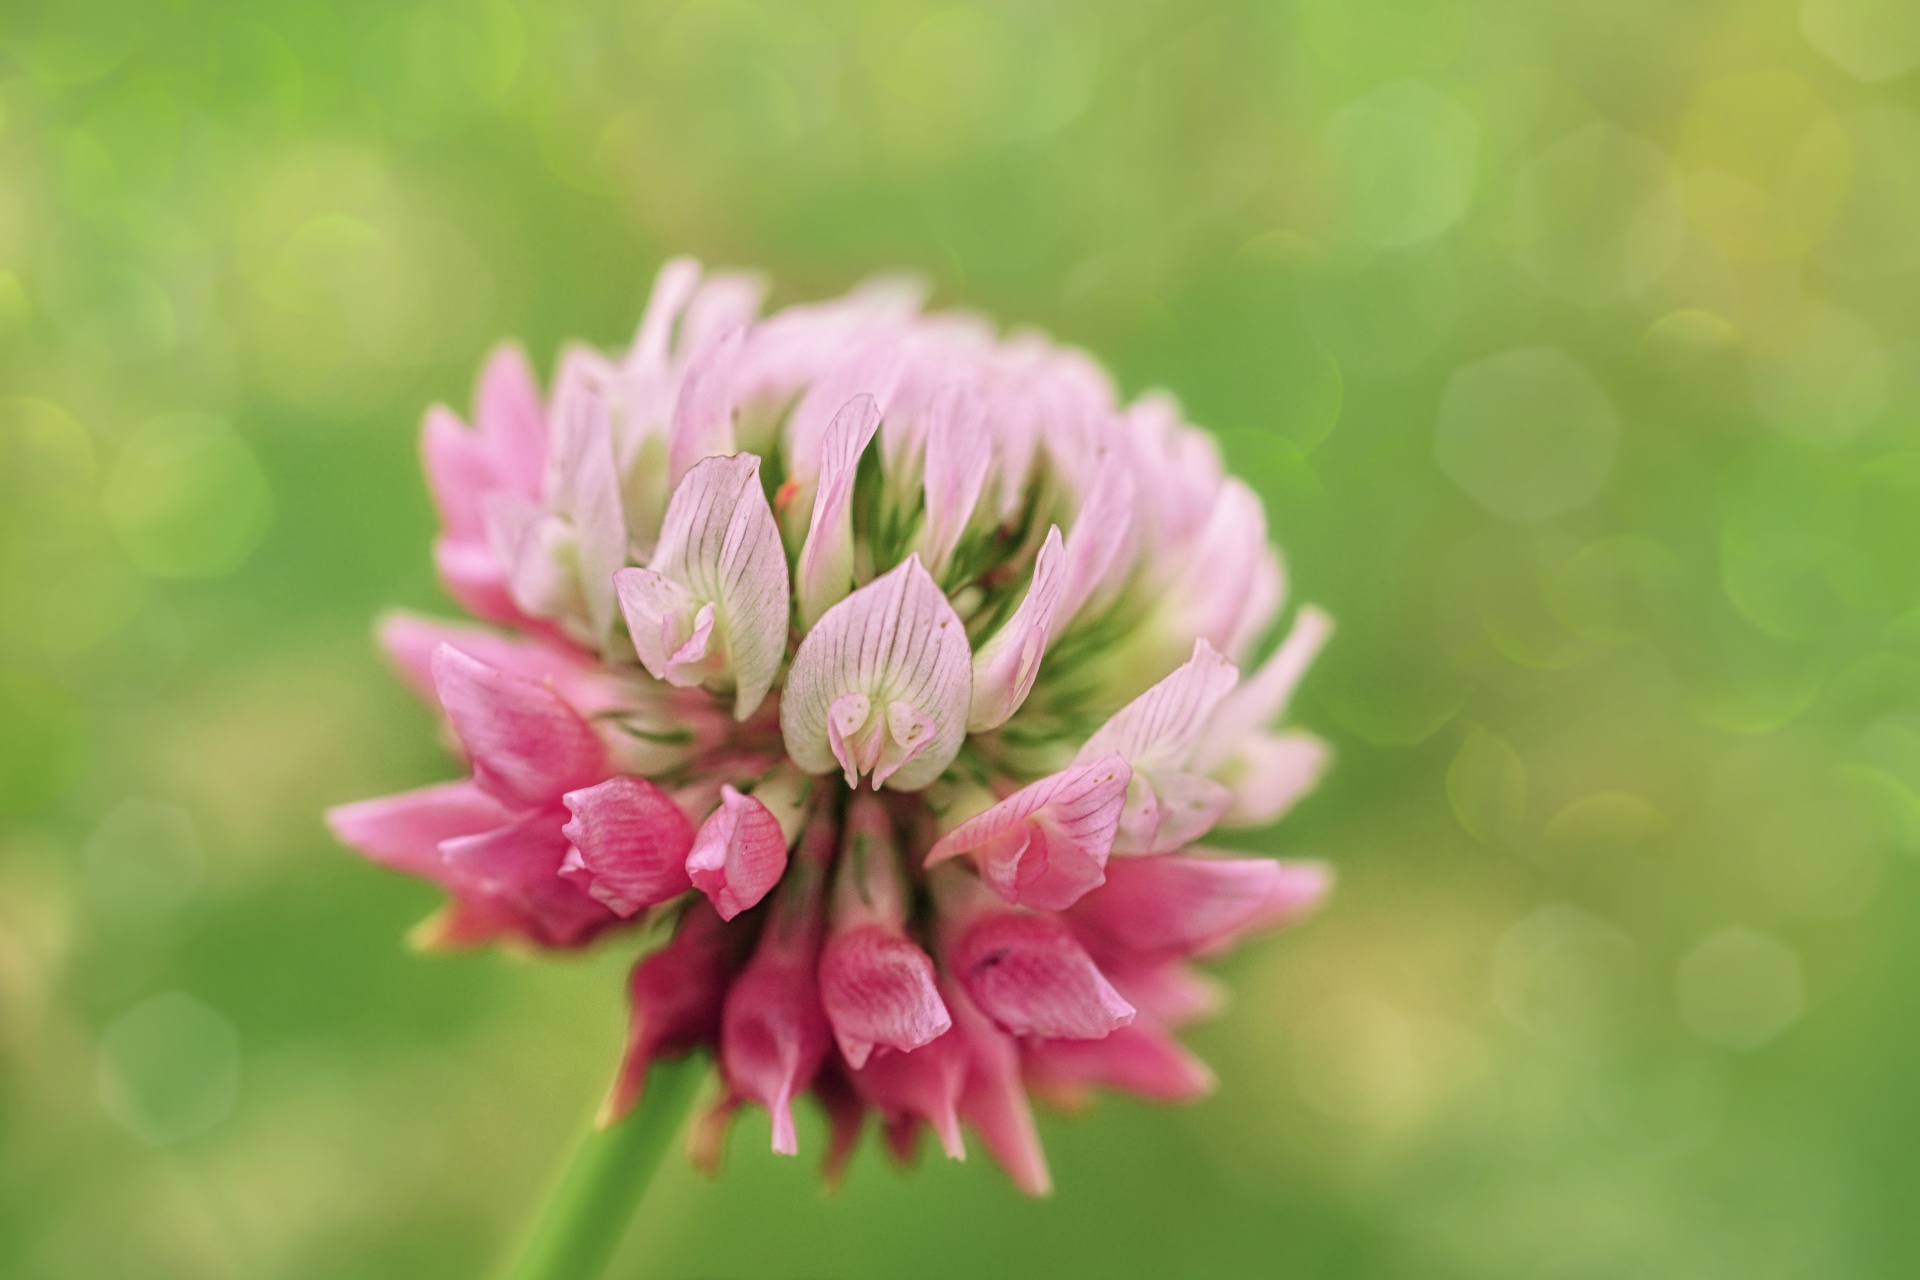 ピンクのクローバーの花 無料画像 Public Domain Pictures